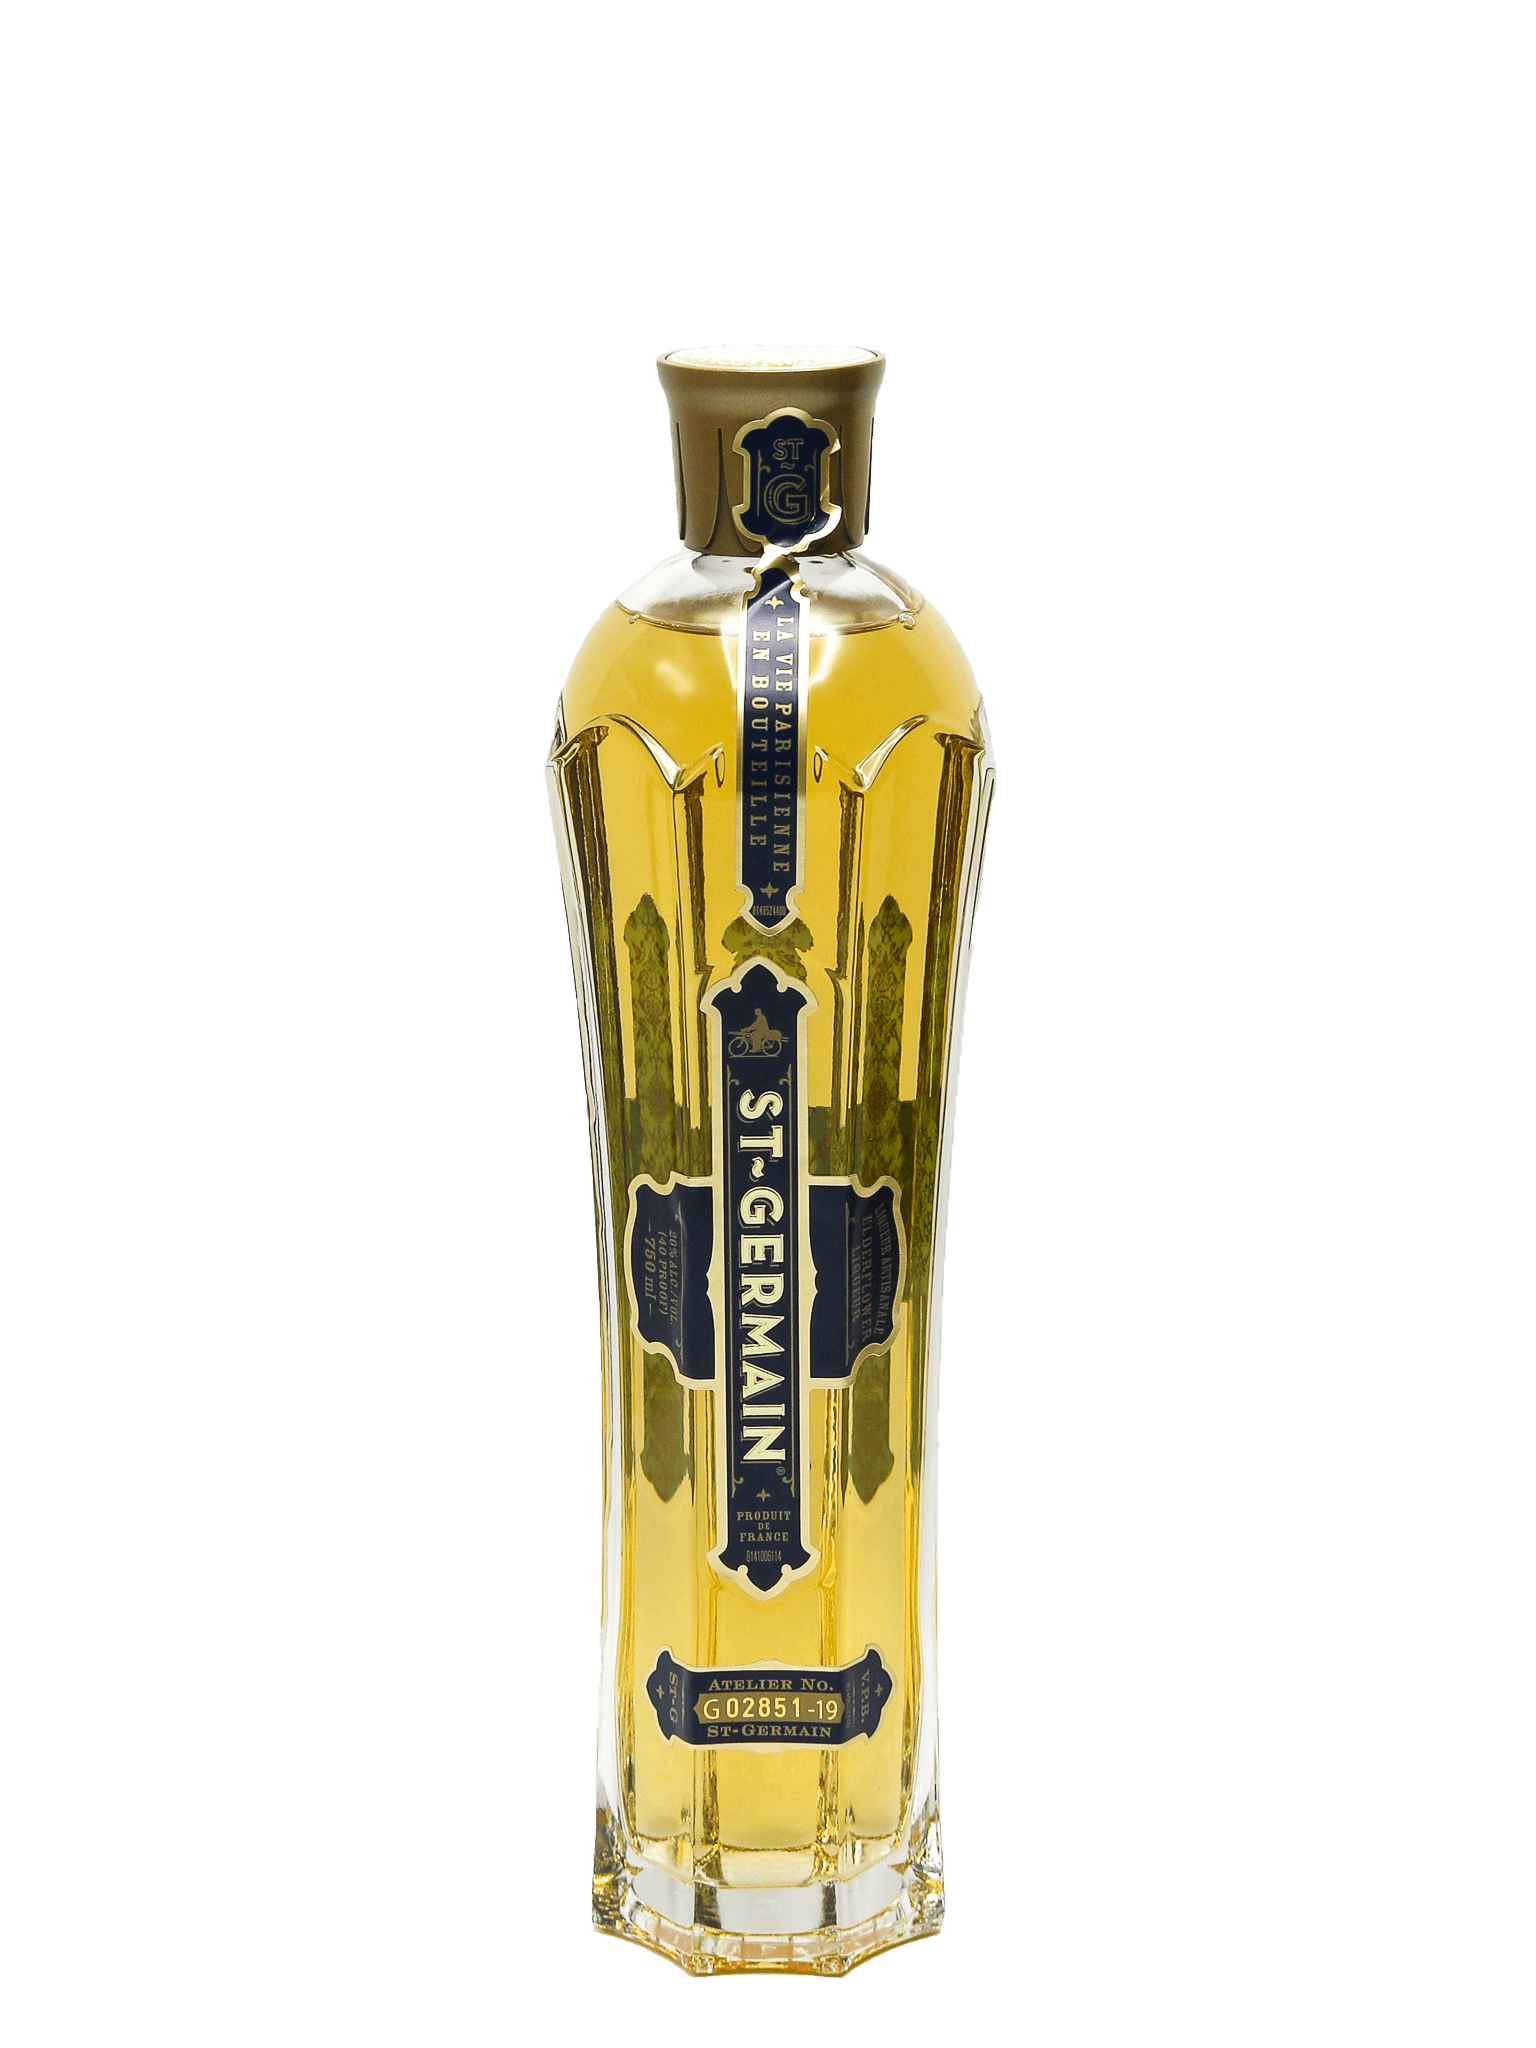 St Germain Elderflower Liqueur 750ml Cork N Bottle 